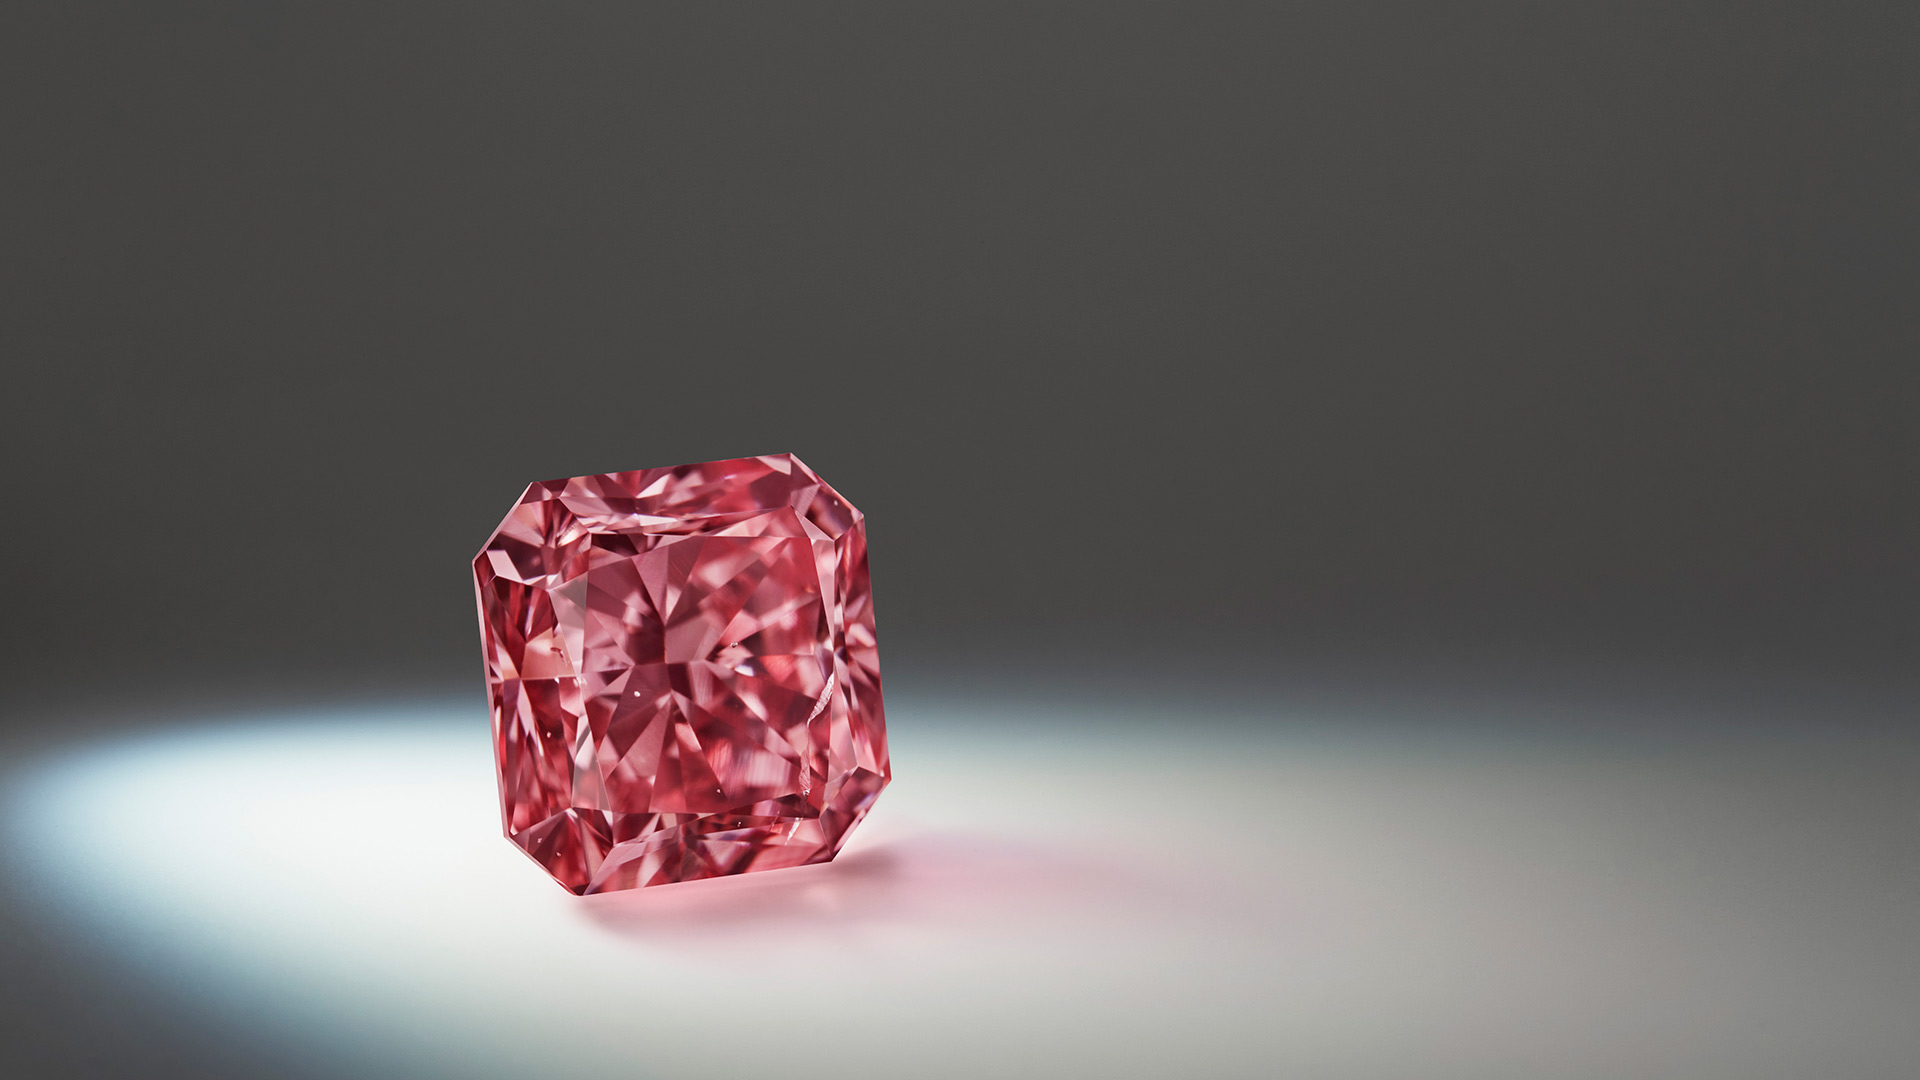 Lot 3, Argyle Lumiere™ a 2.03 carat, Fancy Deep Pink, square radiant diamond